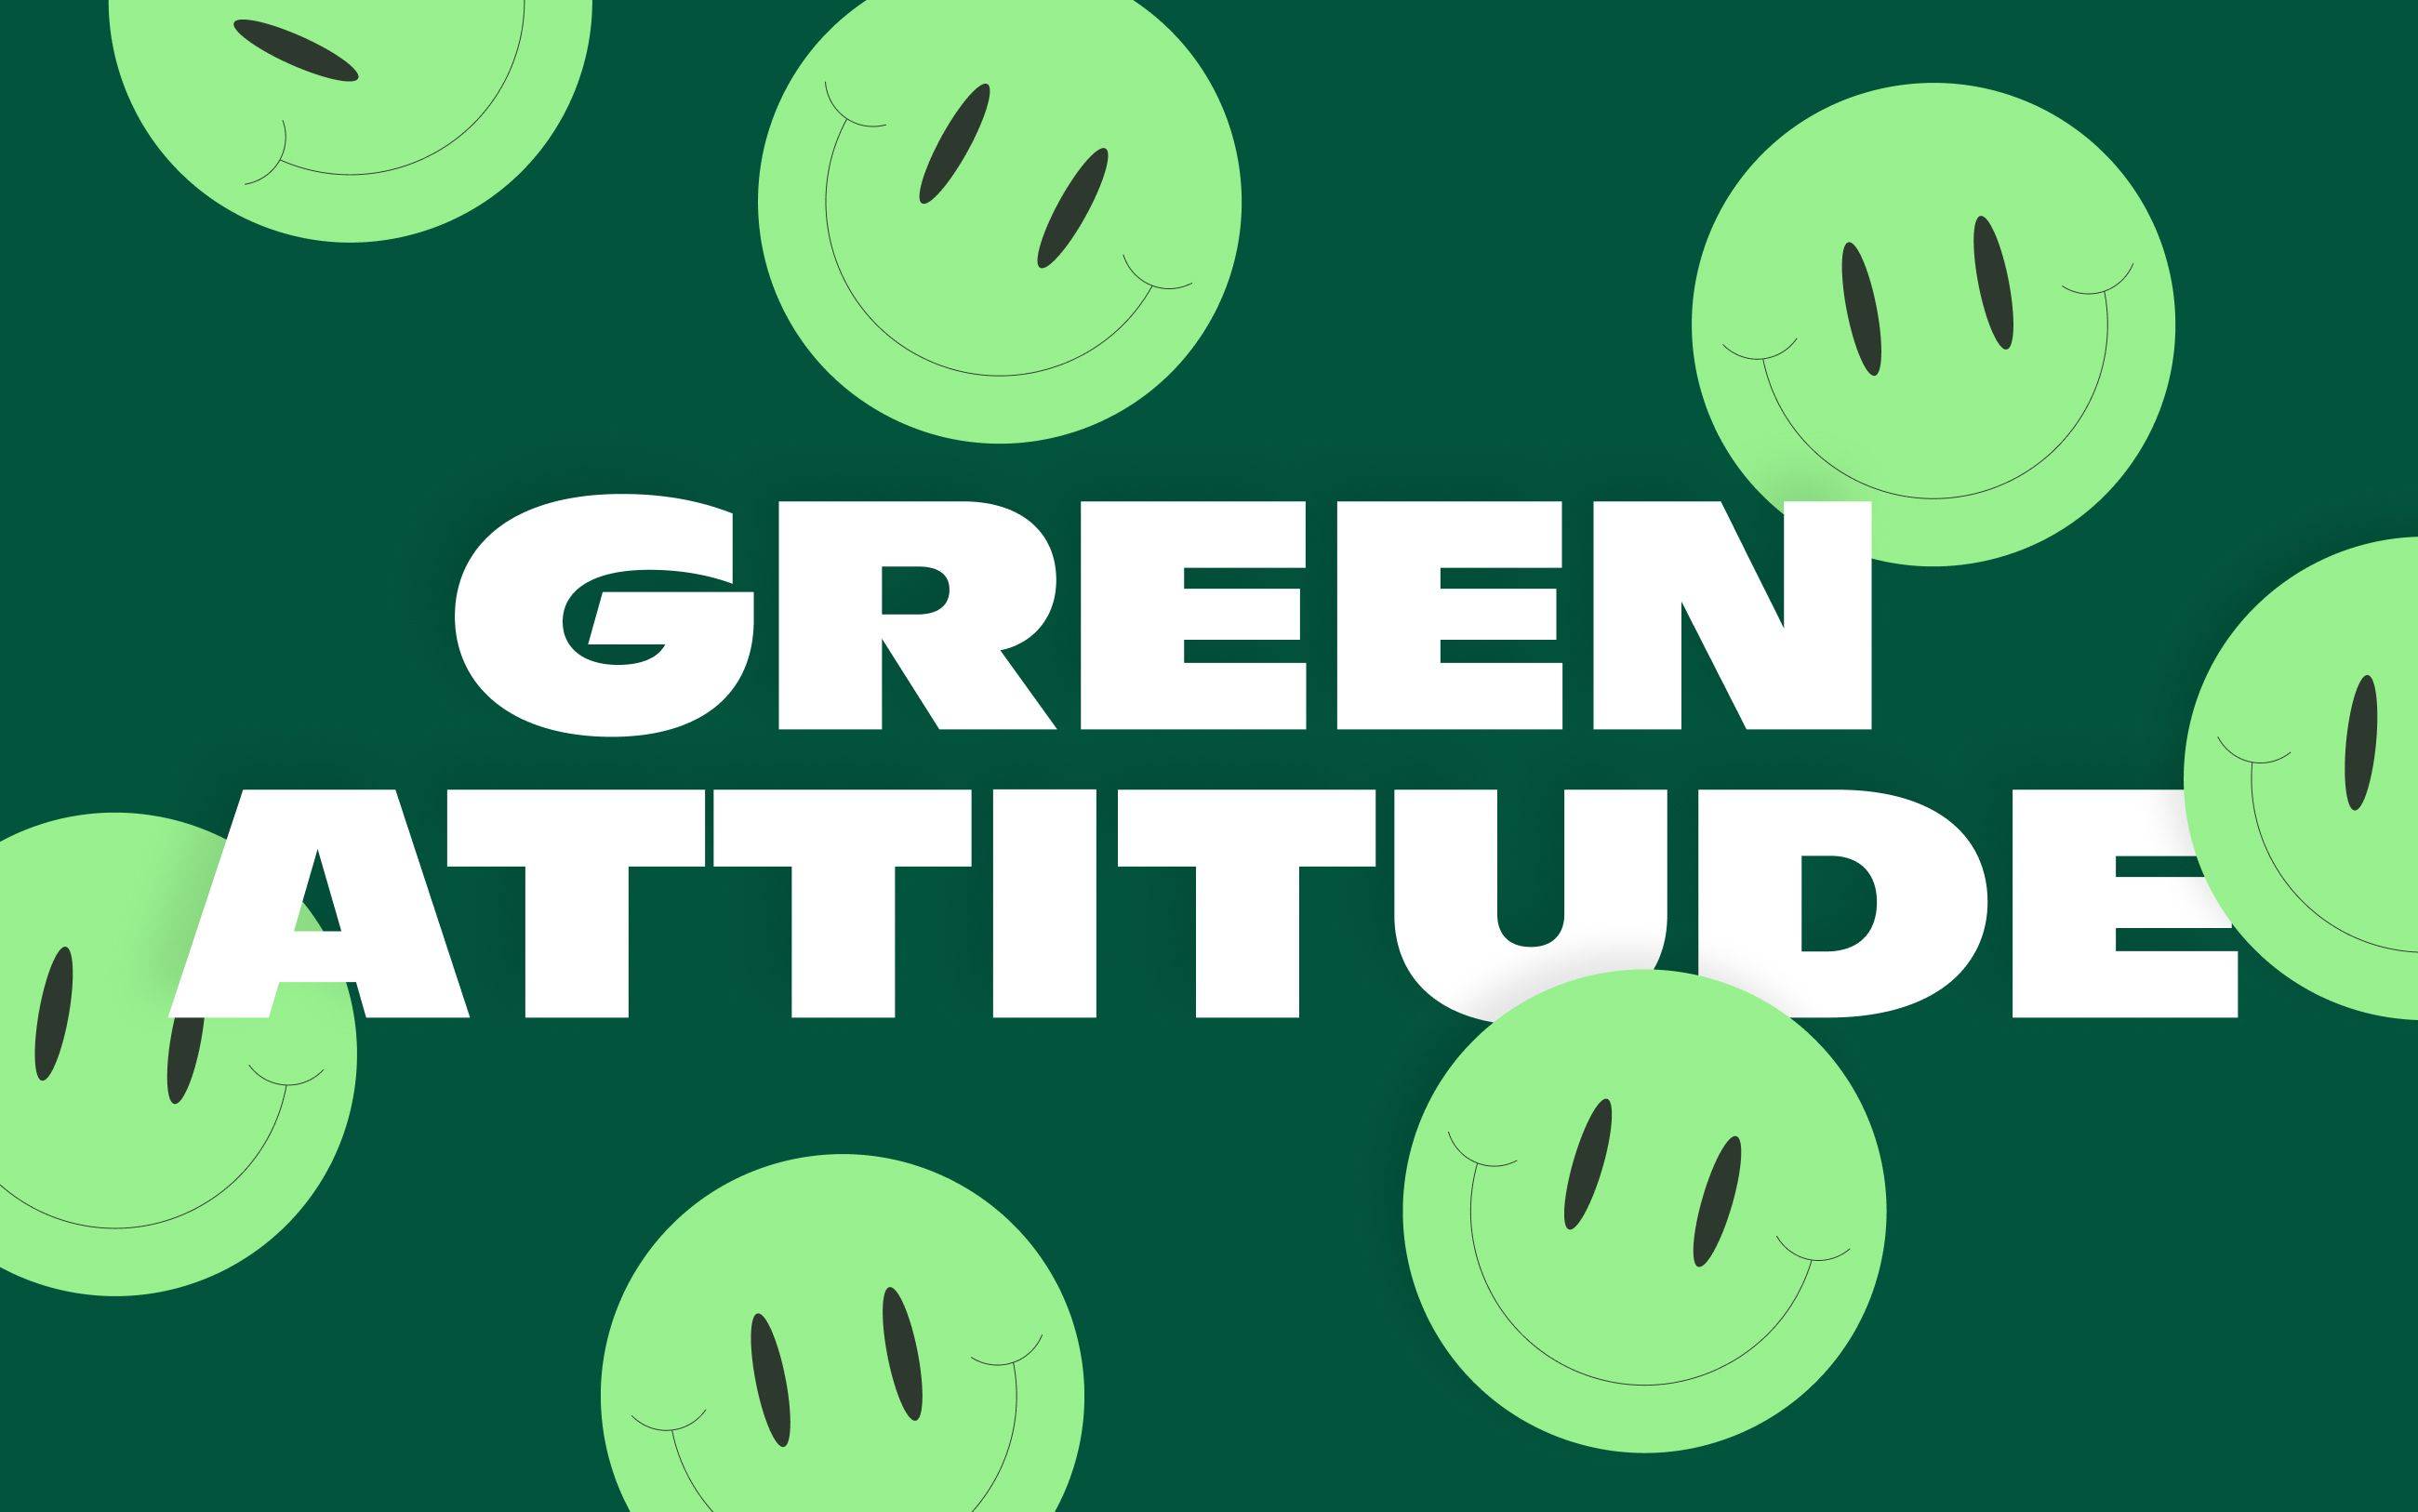 Green attitude - we-go